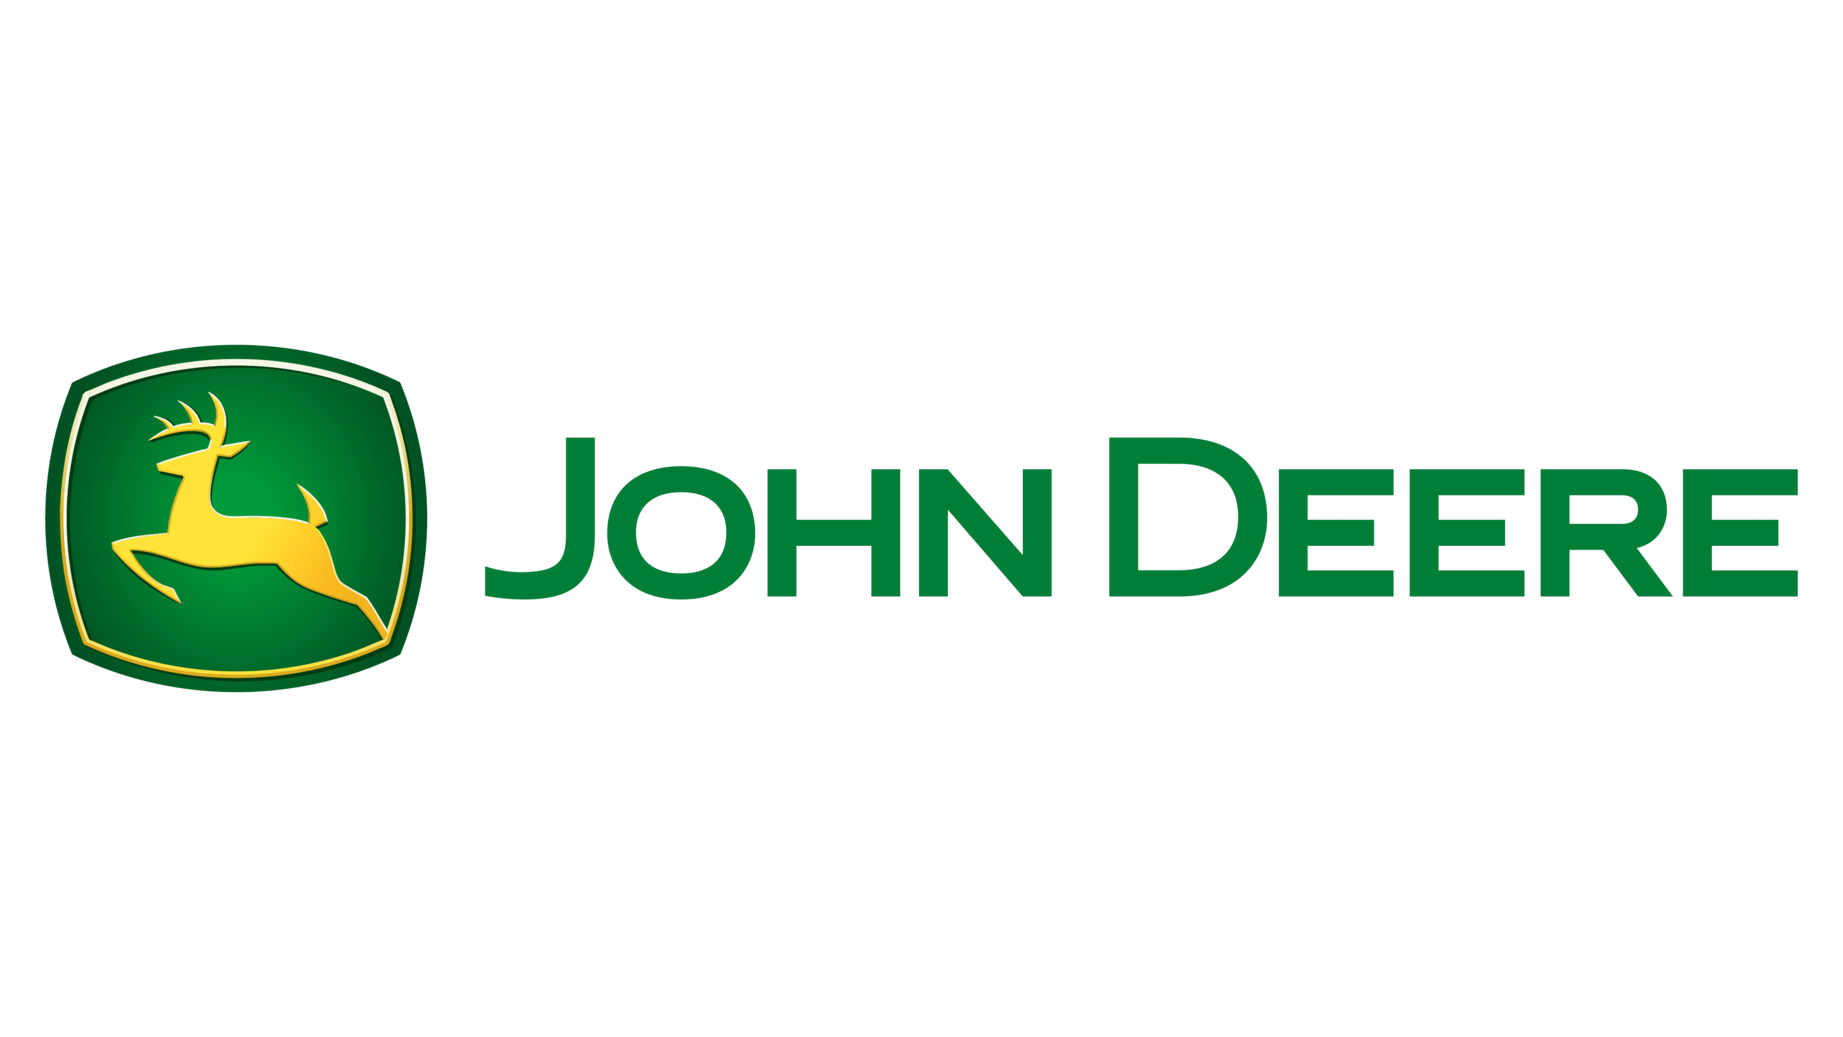 John deere symbol